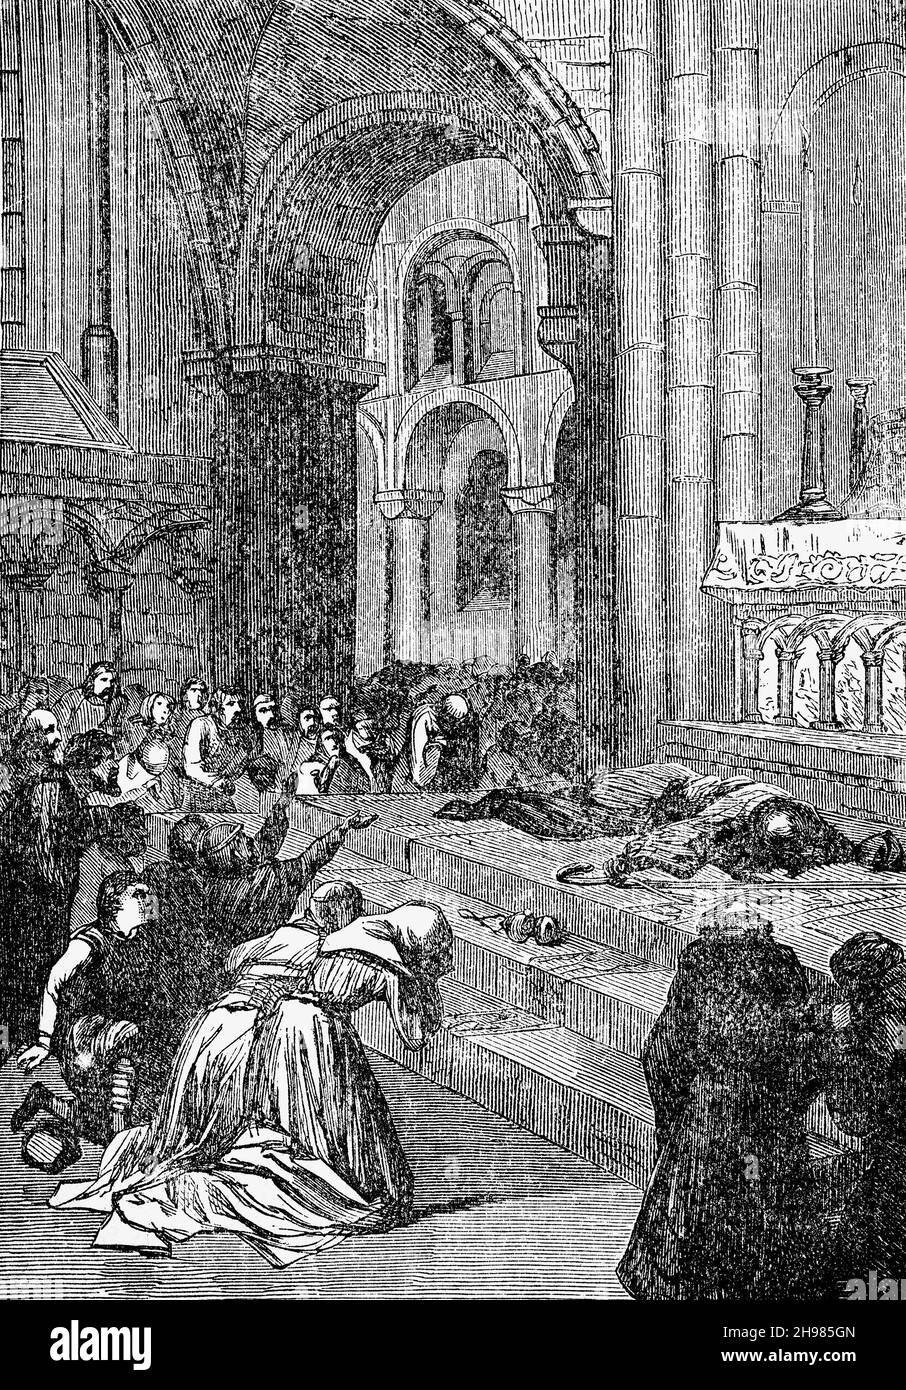 Illustration du meurtre de Thomas Becket à la cathédrale de Canterbury, dans le Kent, en Angleterre, le 29 décembre 1170, à la fin du XIXe siècle.Becket était l'une des figures les plus puissantes de son temps, en tant que chancelier royal et plus tard en tant qu'archevêque de Canterbury.Initialement ami proche du roi Henry II, les deux hommes se sont lancés dans une dispute amère qui a abouti au meurtre choquant de Becket par des chevaliers ayant des liens étroits avec le roi. Banque D'Images